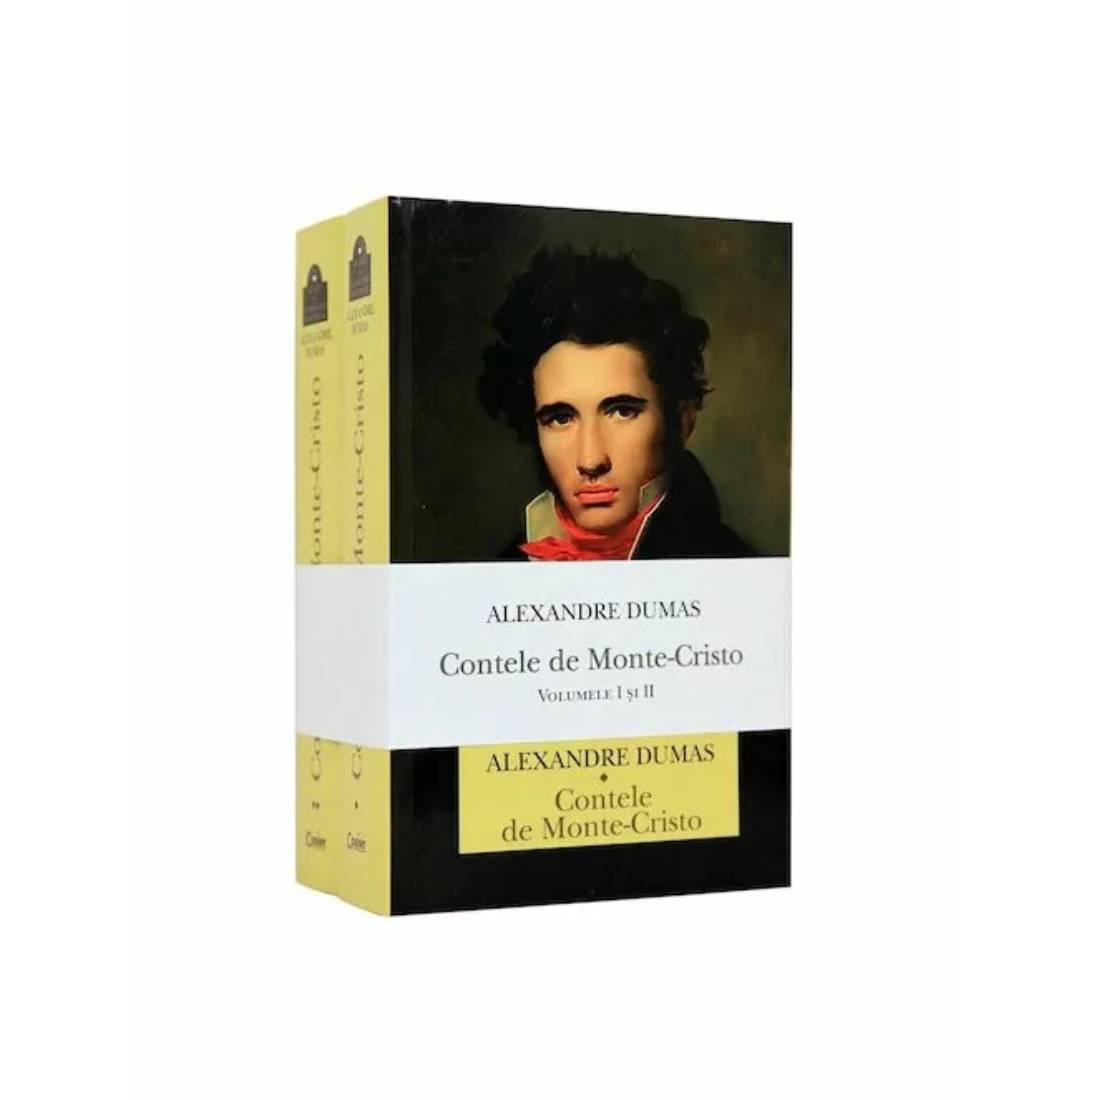 Carte Editura Corint, Contele de Monte-Cristo. 2 volume, Alexandre Dumas